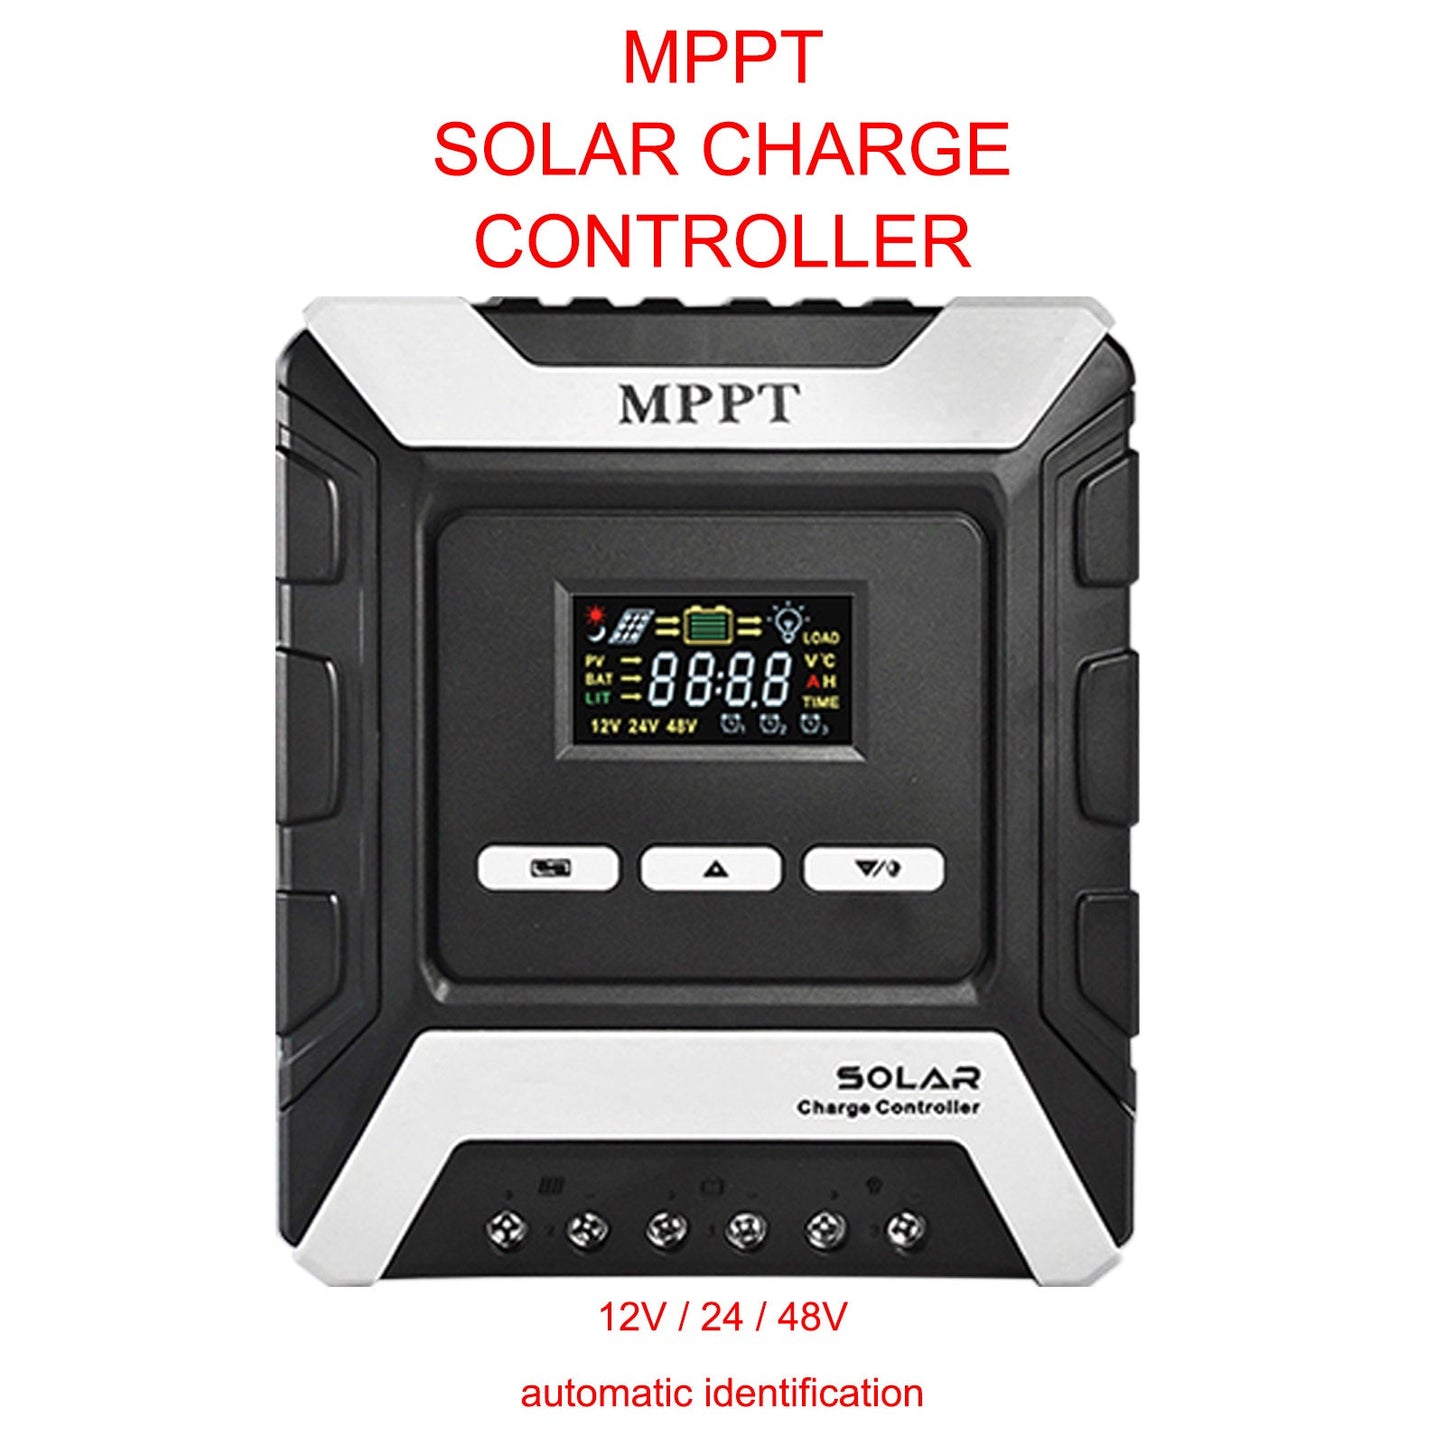 Chargeur de contrôleur de Charge solaire automatique MPPT 60A 12V/24V/48V avec écran LCD couleur